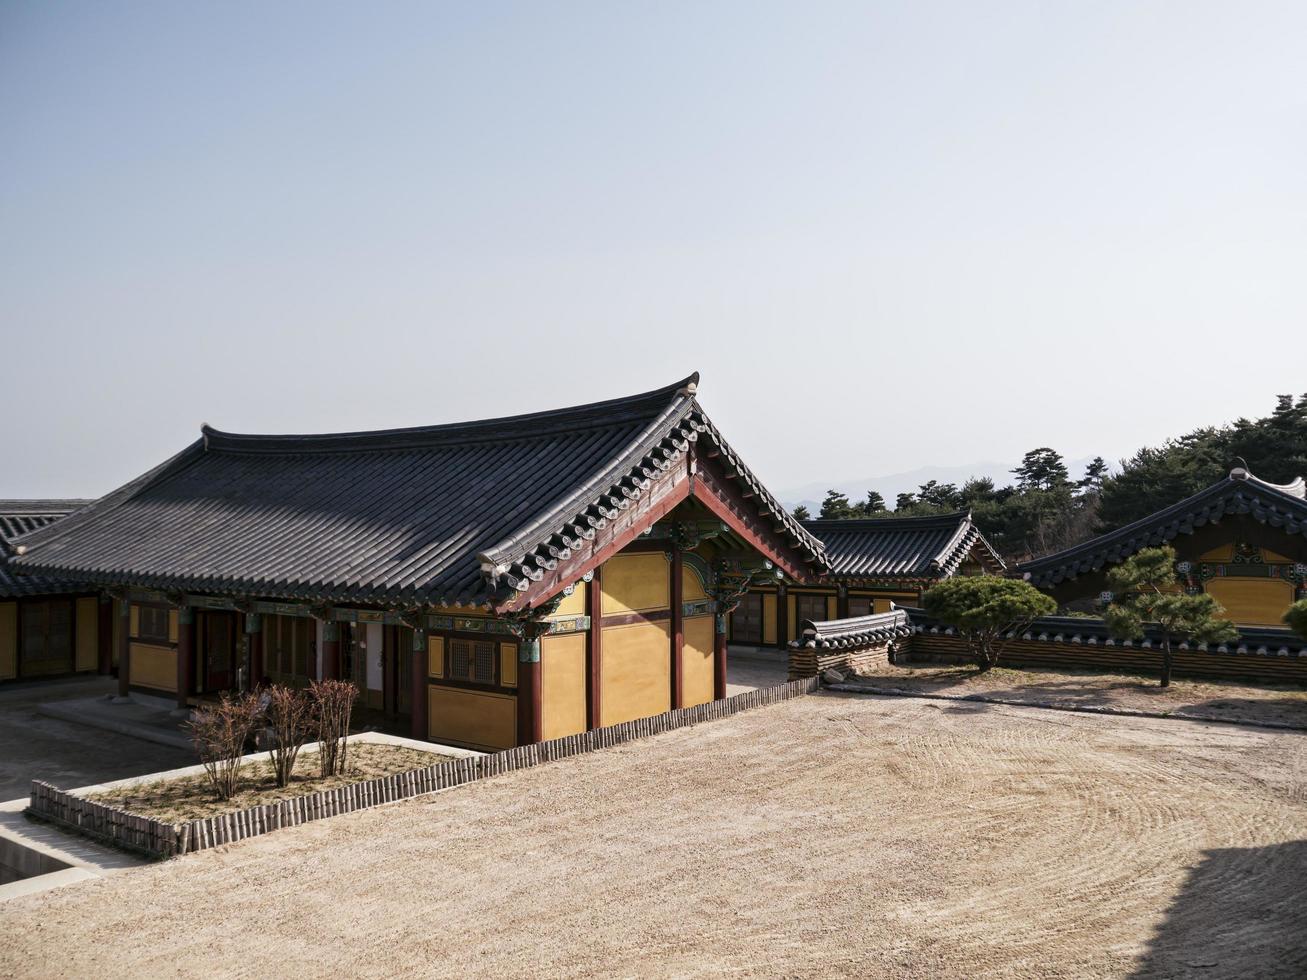 edifici tradizionali coreani nel tempio naksansa, città di yangyang, corea del sud foto